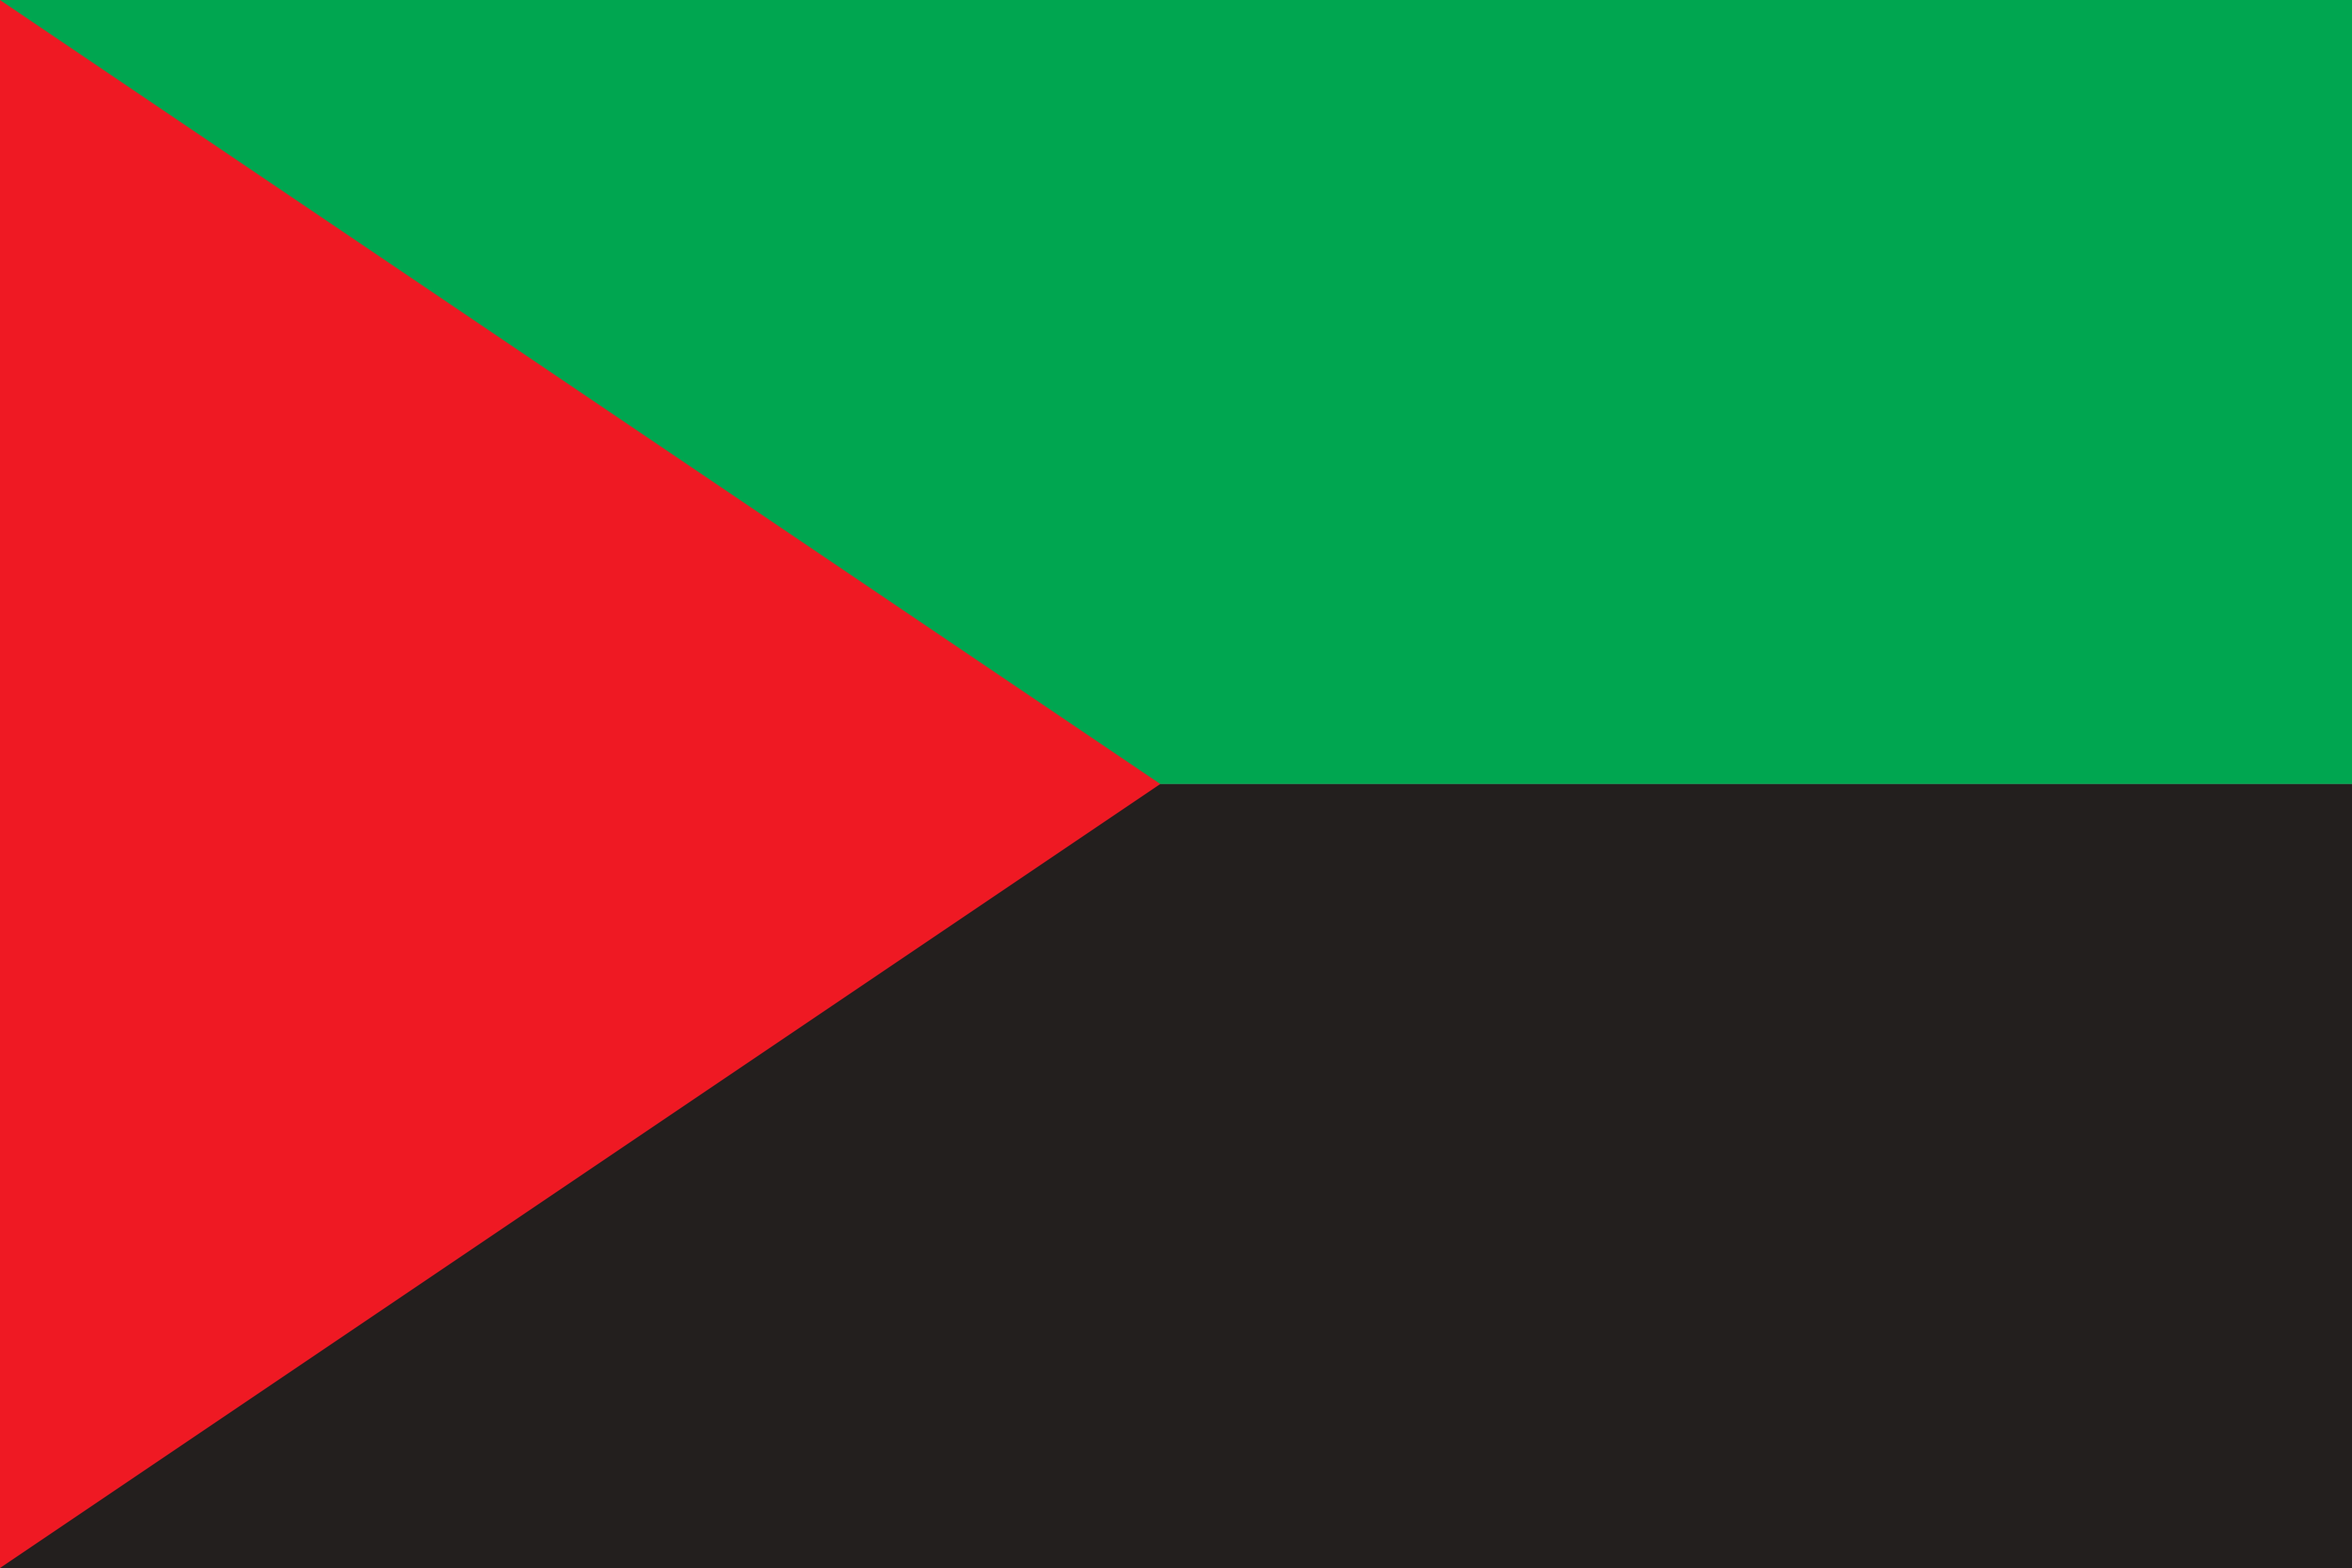     Les élus de la CTM adoptent le drapeau Rouge-Vert-Noir 

